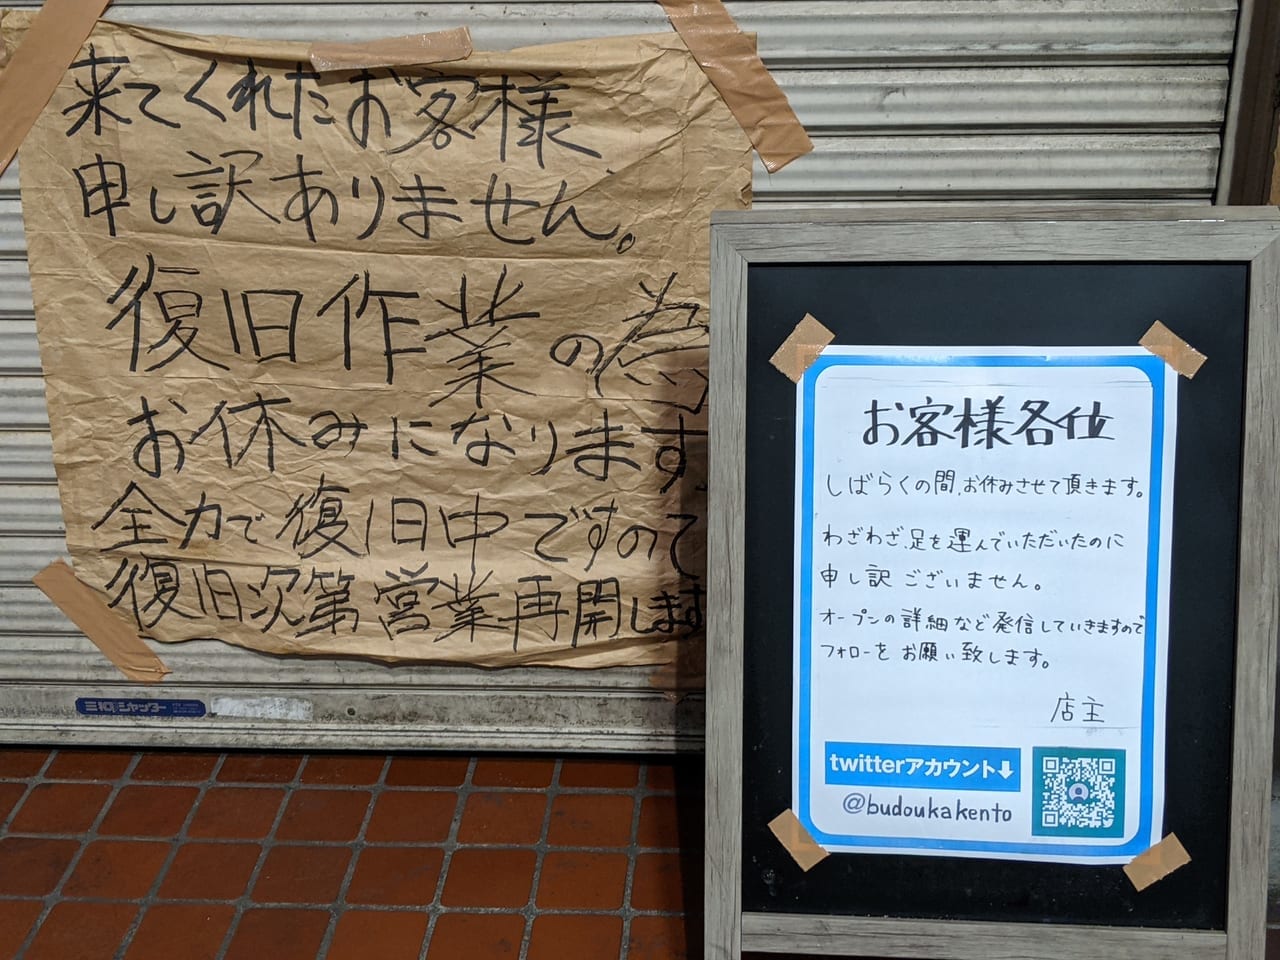 東陽町にある横浜家系ラーメン「武道家 賢斗」の臨時休業のお知らせ